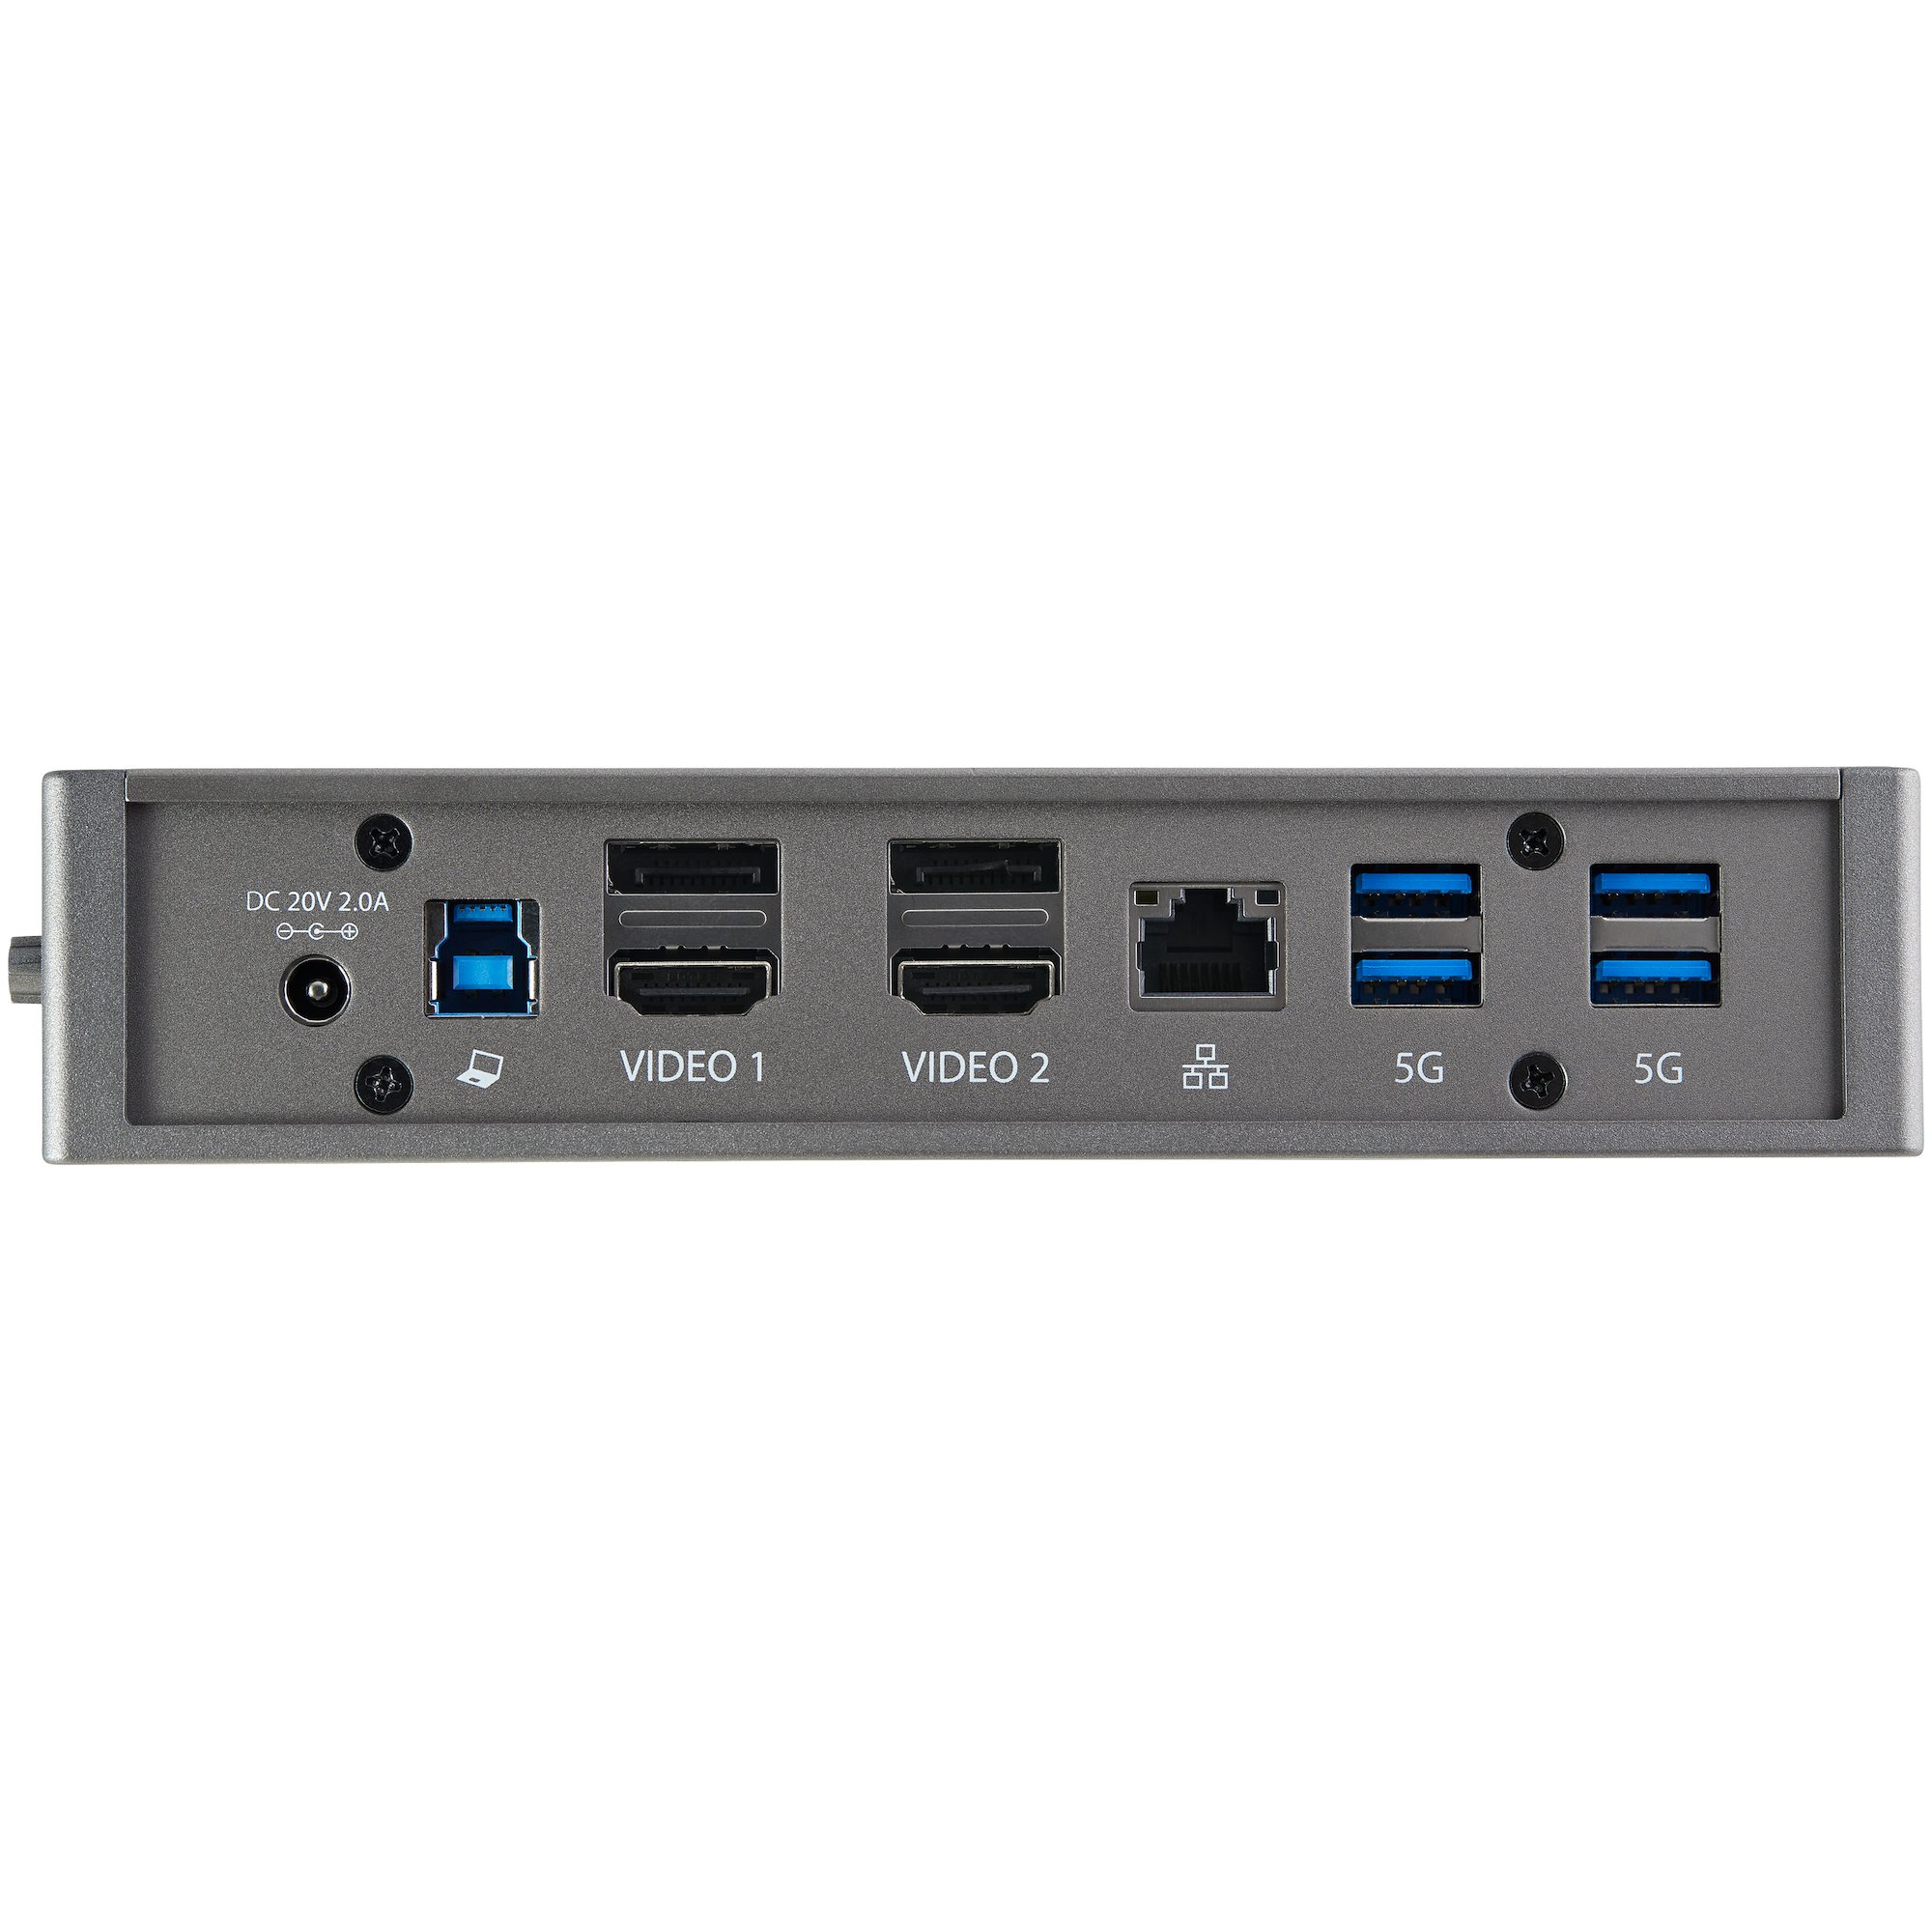 StarTech.com Station d'accueil USB 3.0 à double affichage pour PC portable  - 2x HDMI / 2x DP / HDMI et DP - Dock USB 3 (DK30A2DH)